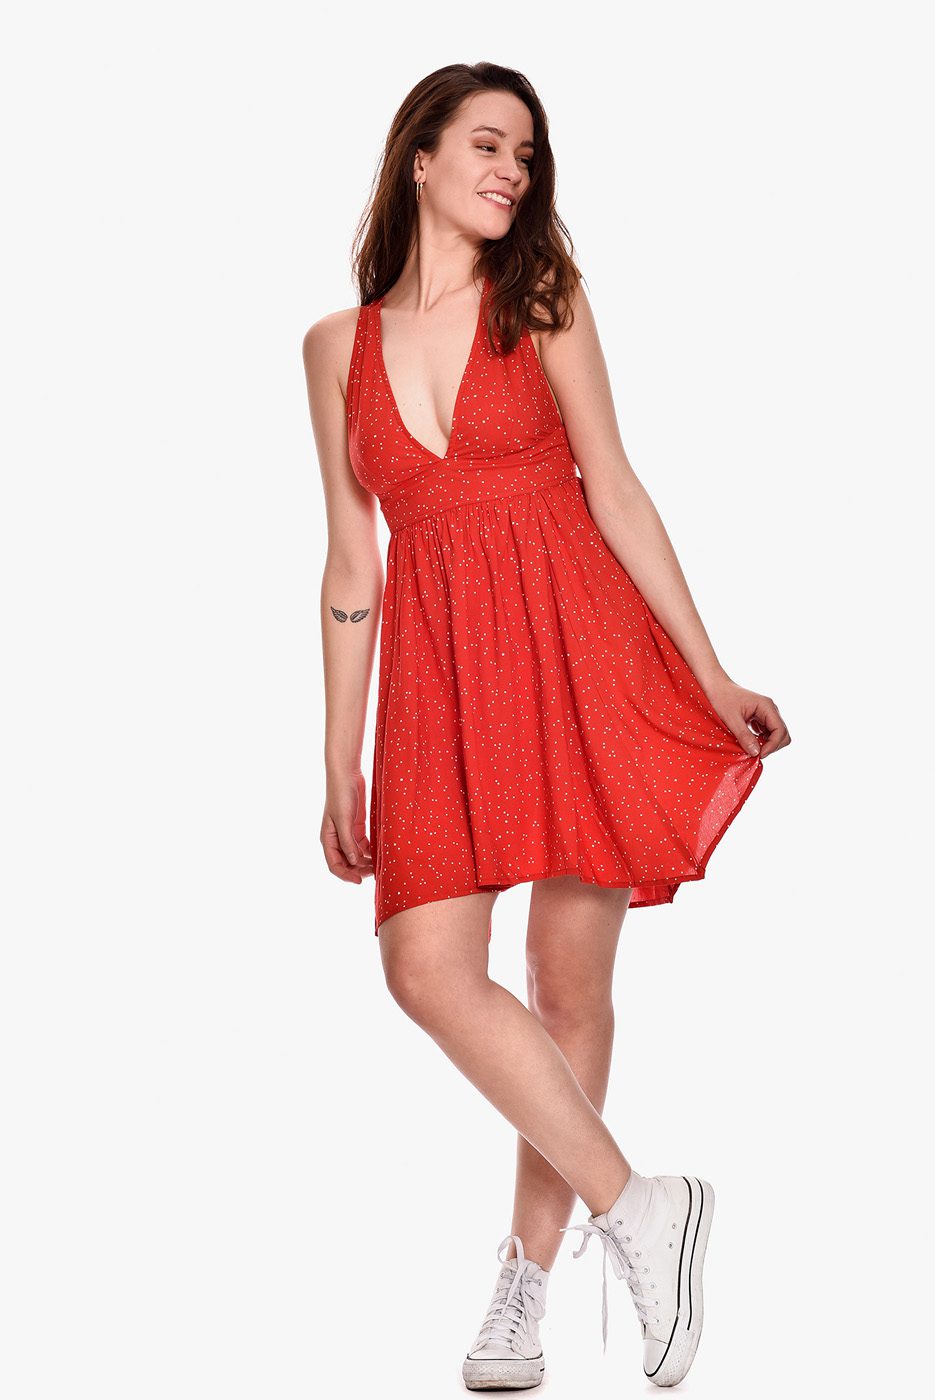 vestido-corto-free-dress-estampado-redsta